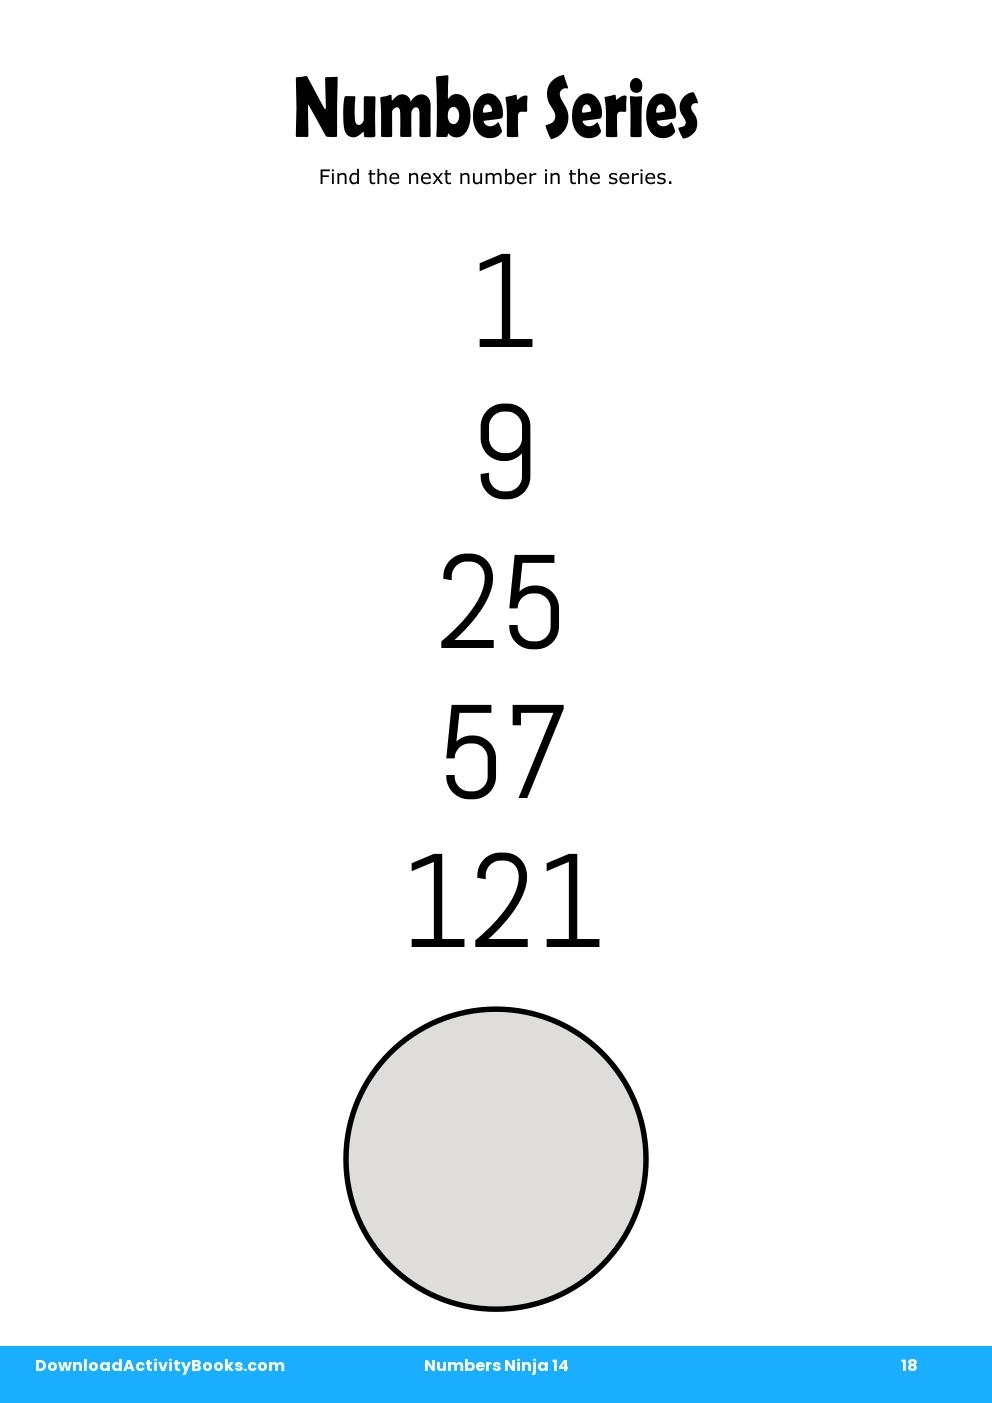 Number Series in Numbers Ninja 14